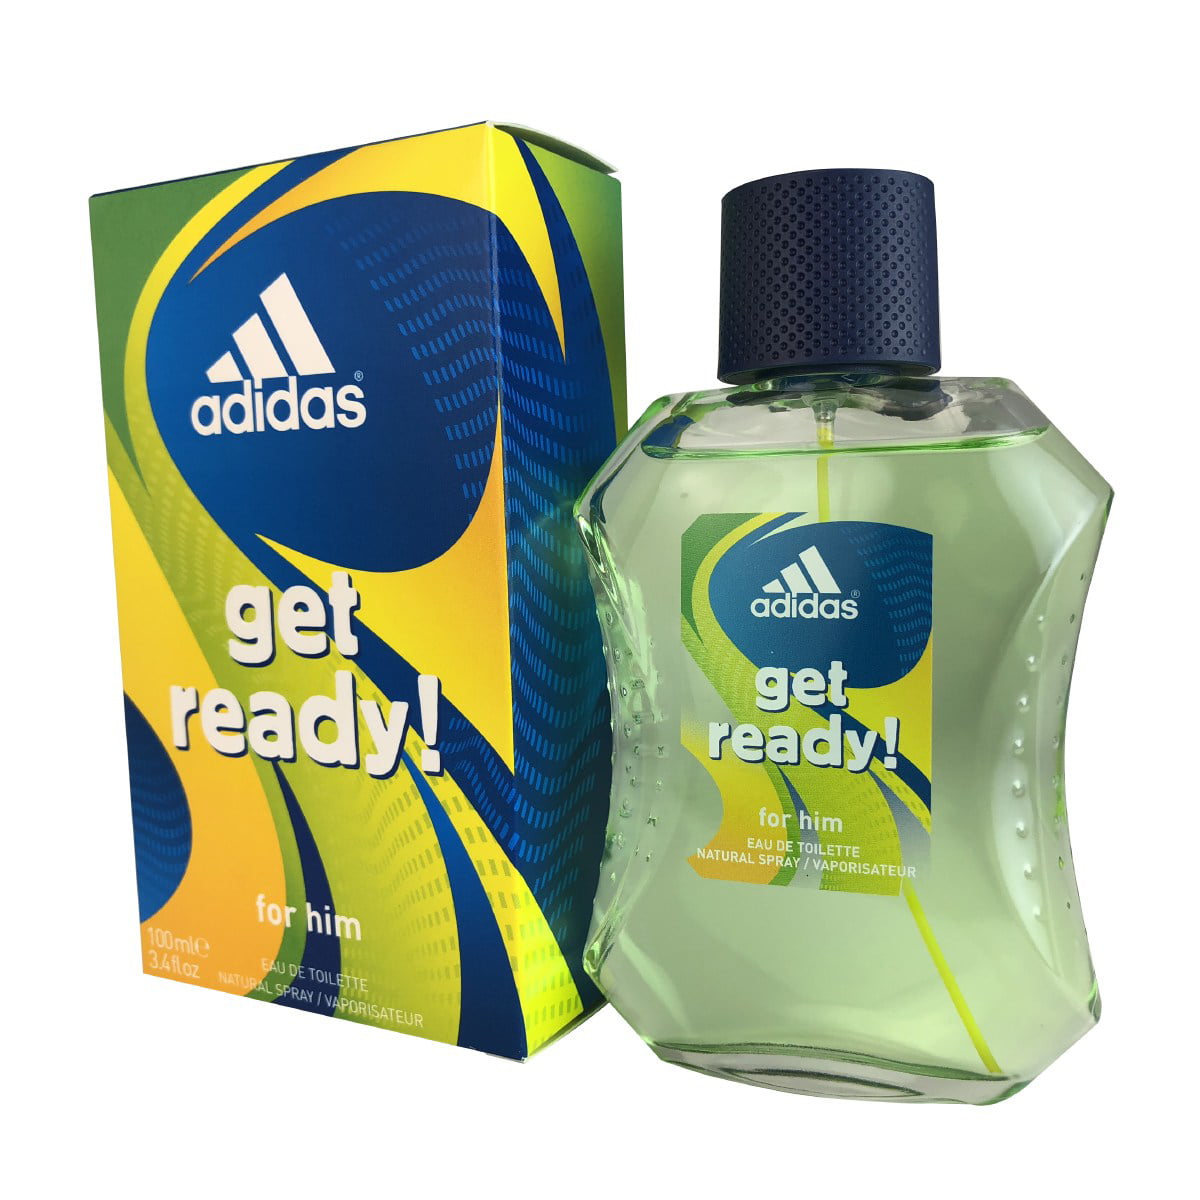 adidas get ready perfume price